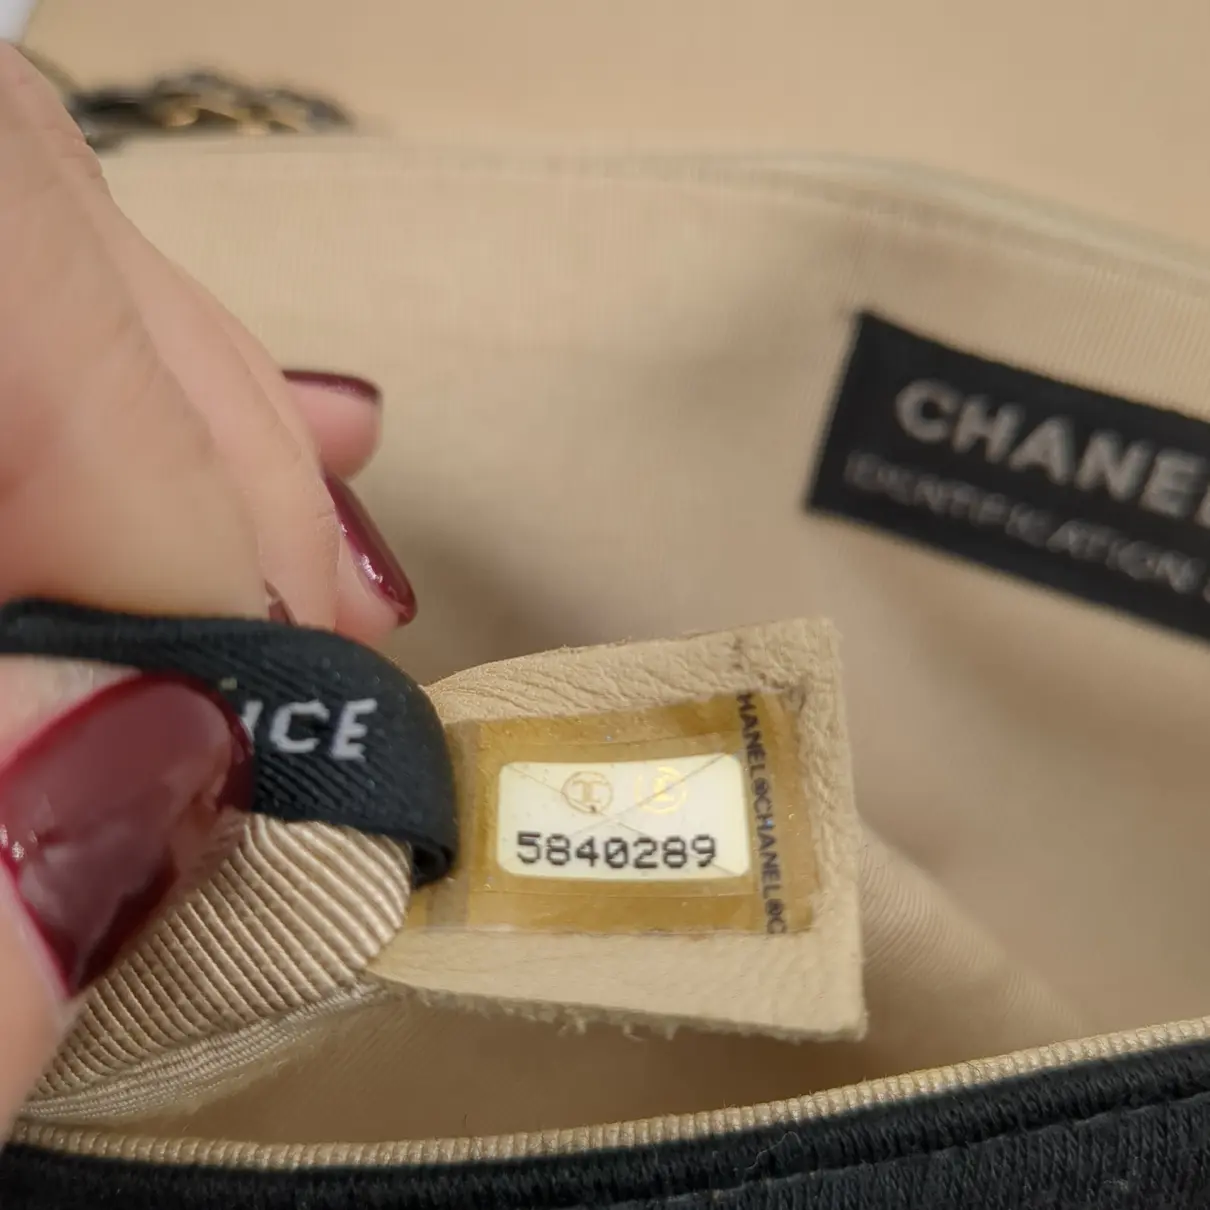 2.55 cloth crossbody bag Chanel